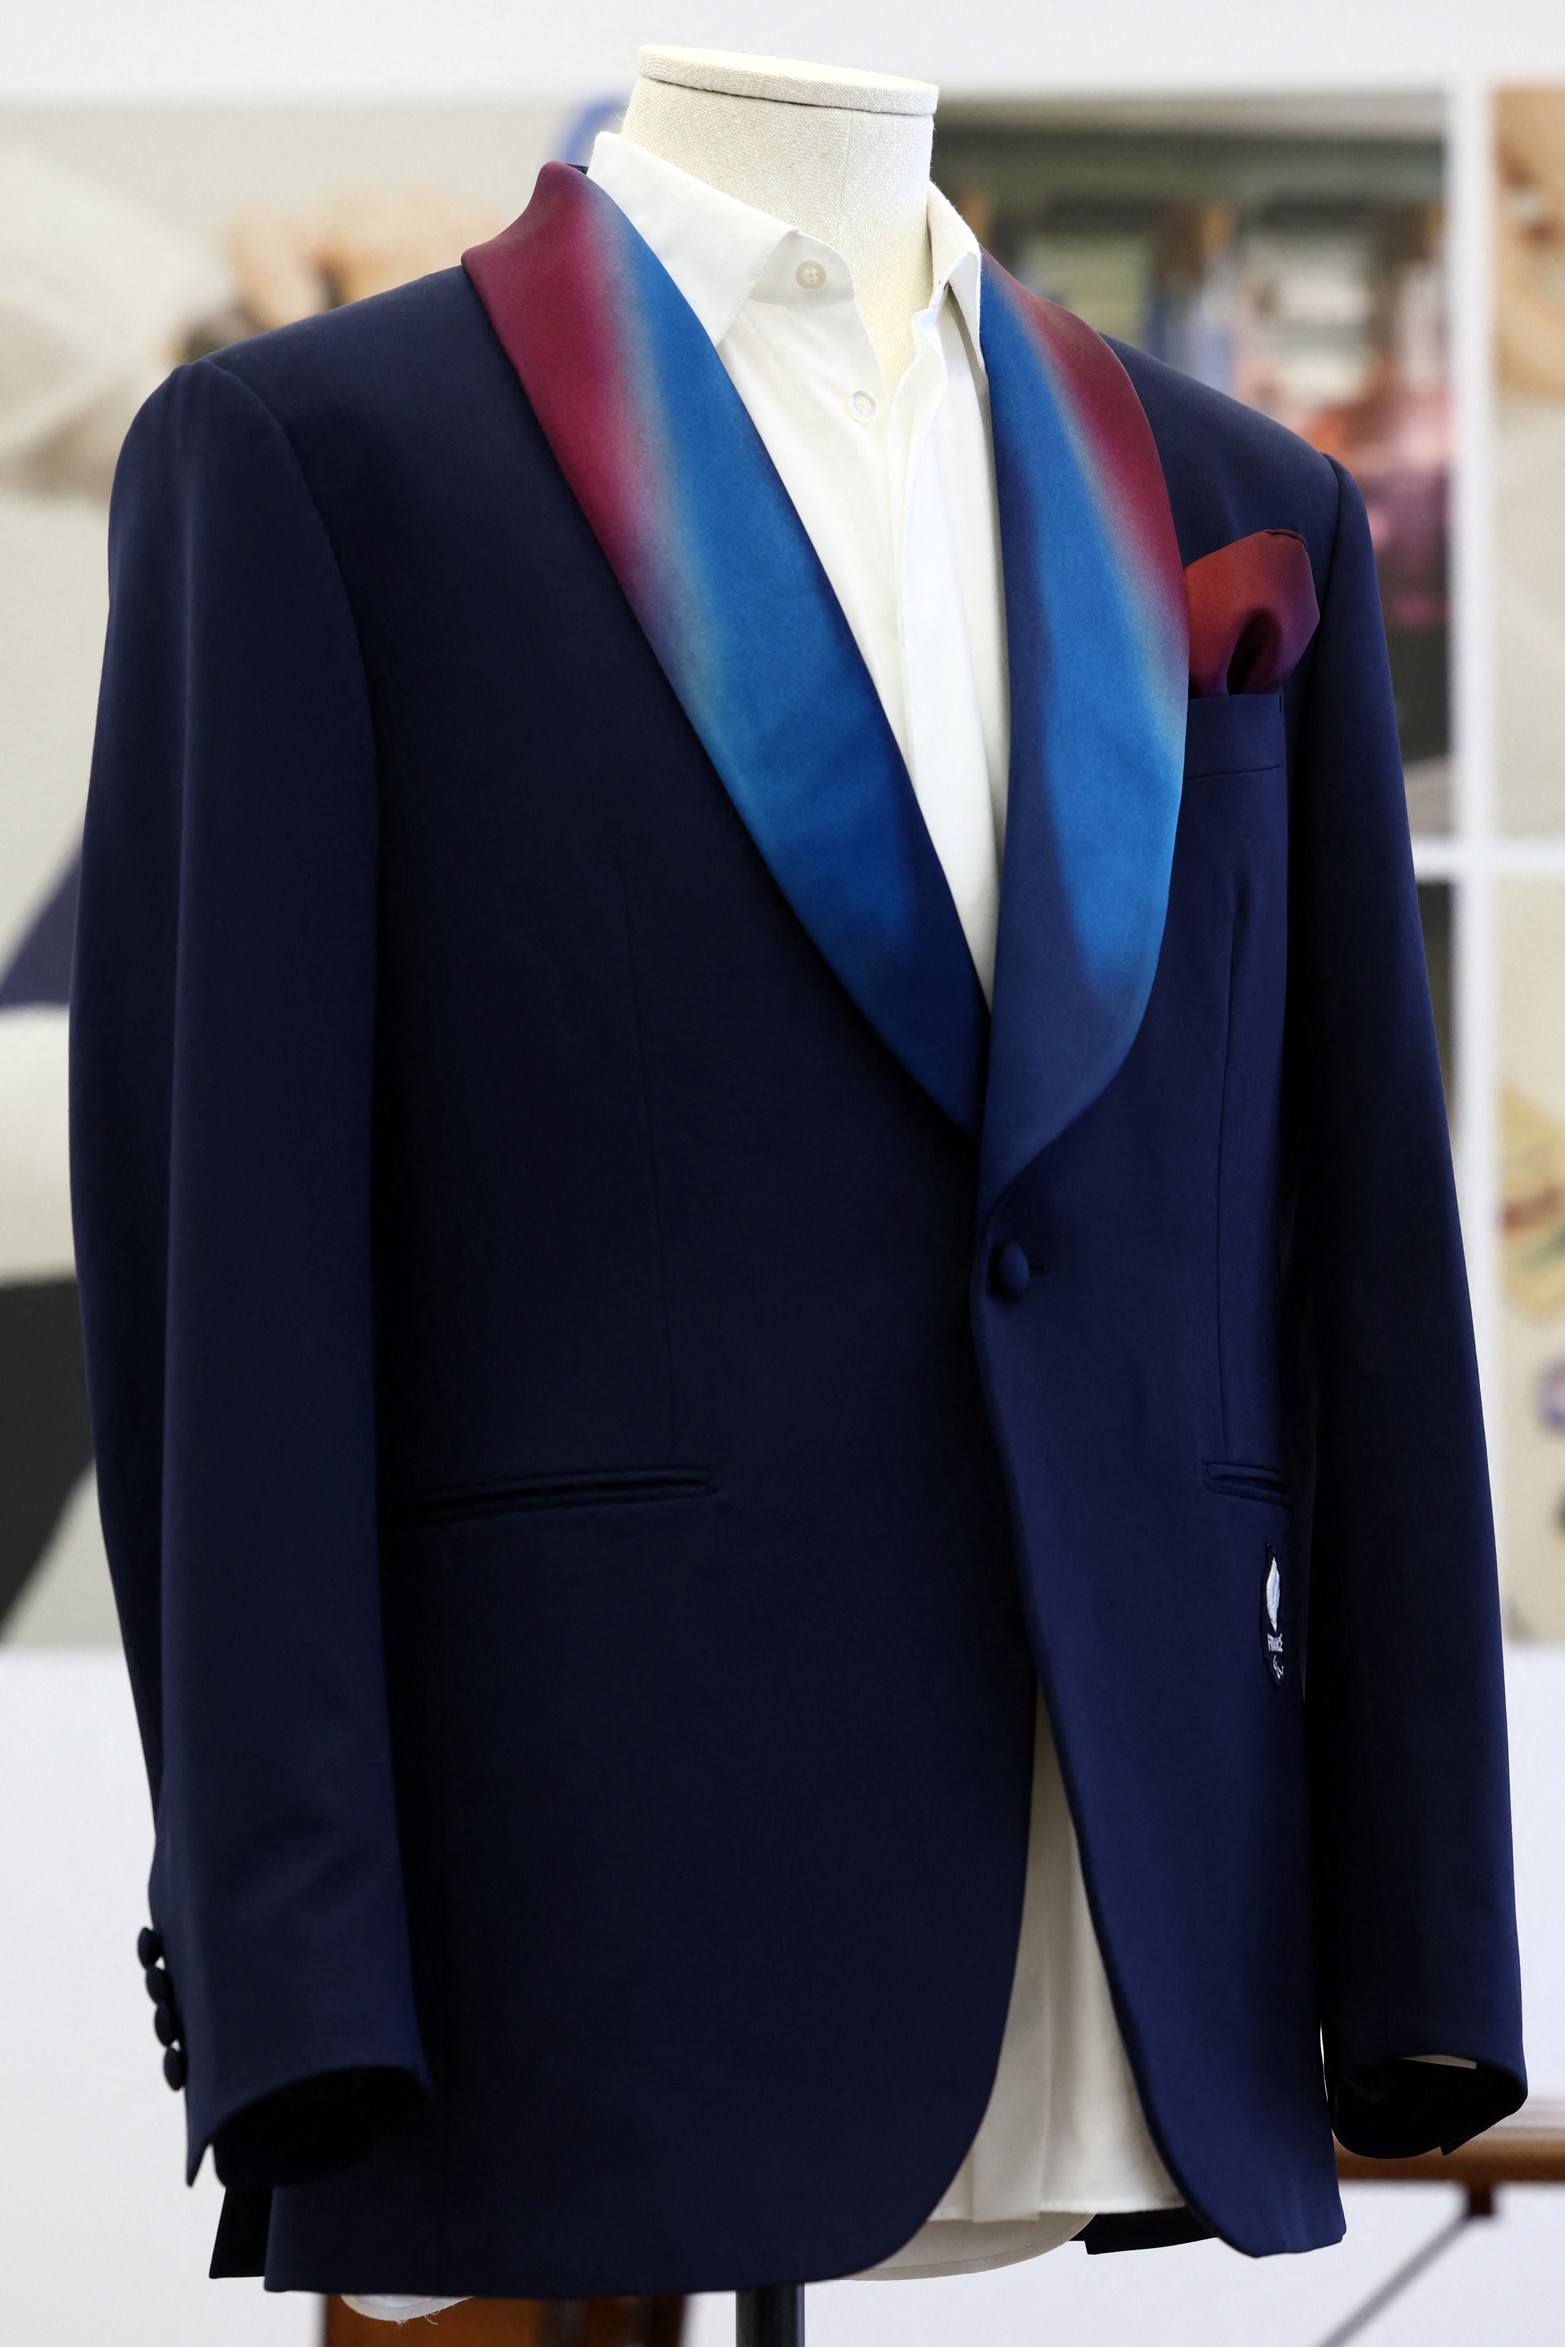 La chaqueta de traje para hombre que llevarán los atletas del equipo francés para la ceremonia de apertura de la exclusiva marca de ropa masculina de LVMH, Berluti, se exhibe en una sala de exposición en la sede de Berluti en París, Francia.